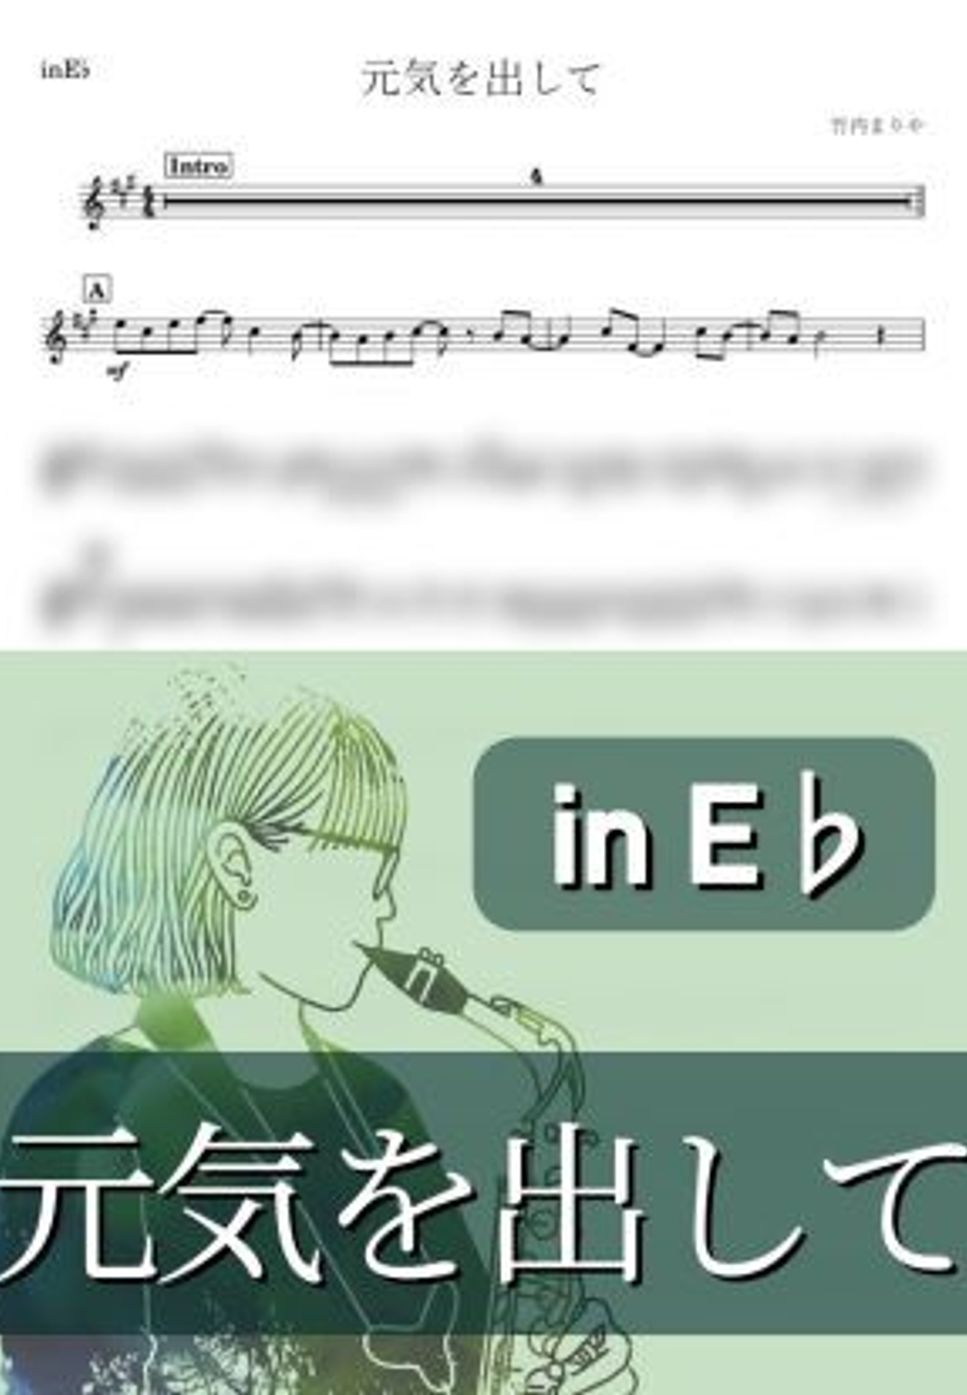 竹内まりや - 元気を出して (E♭) by kanamusic